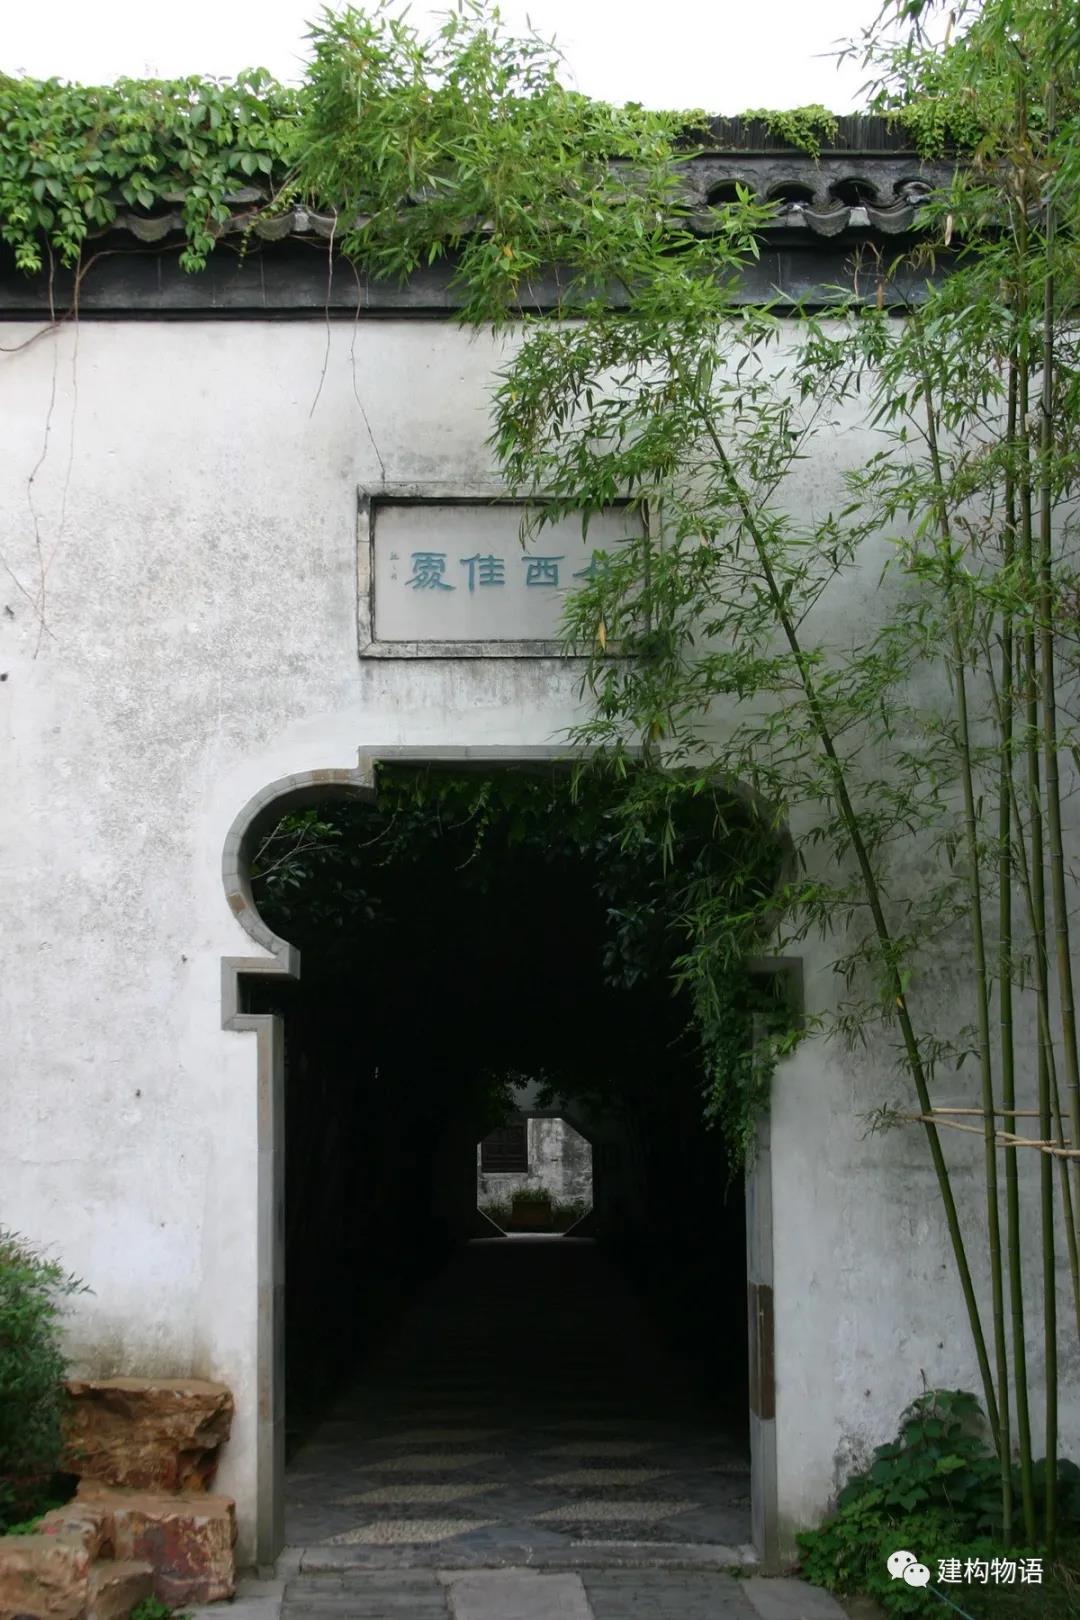 扬州个园一景——斑驳的墙面视觉效果柔和，显示出历史感、时间感。.jpg